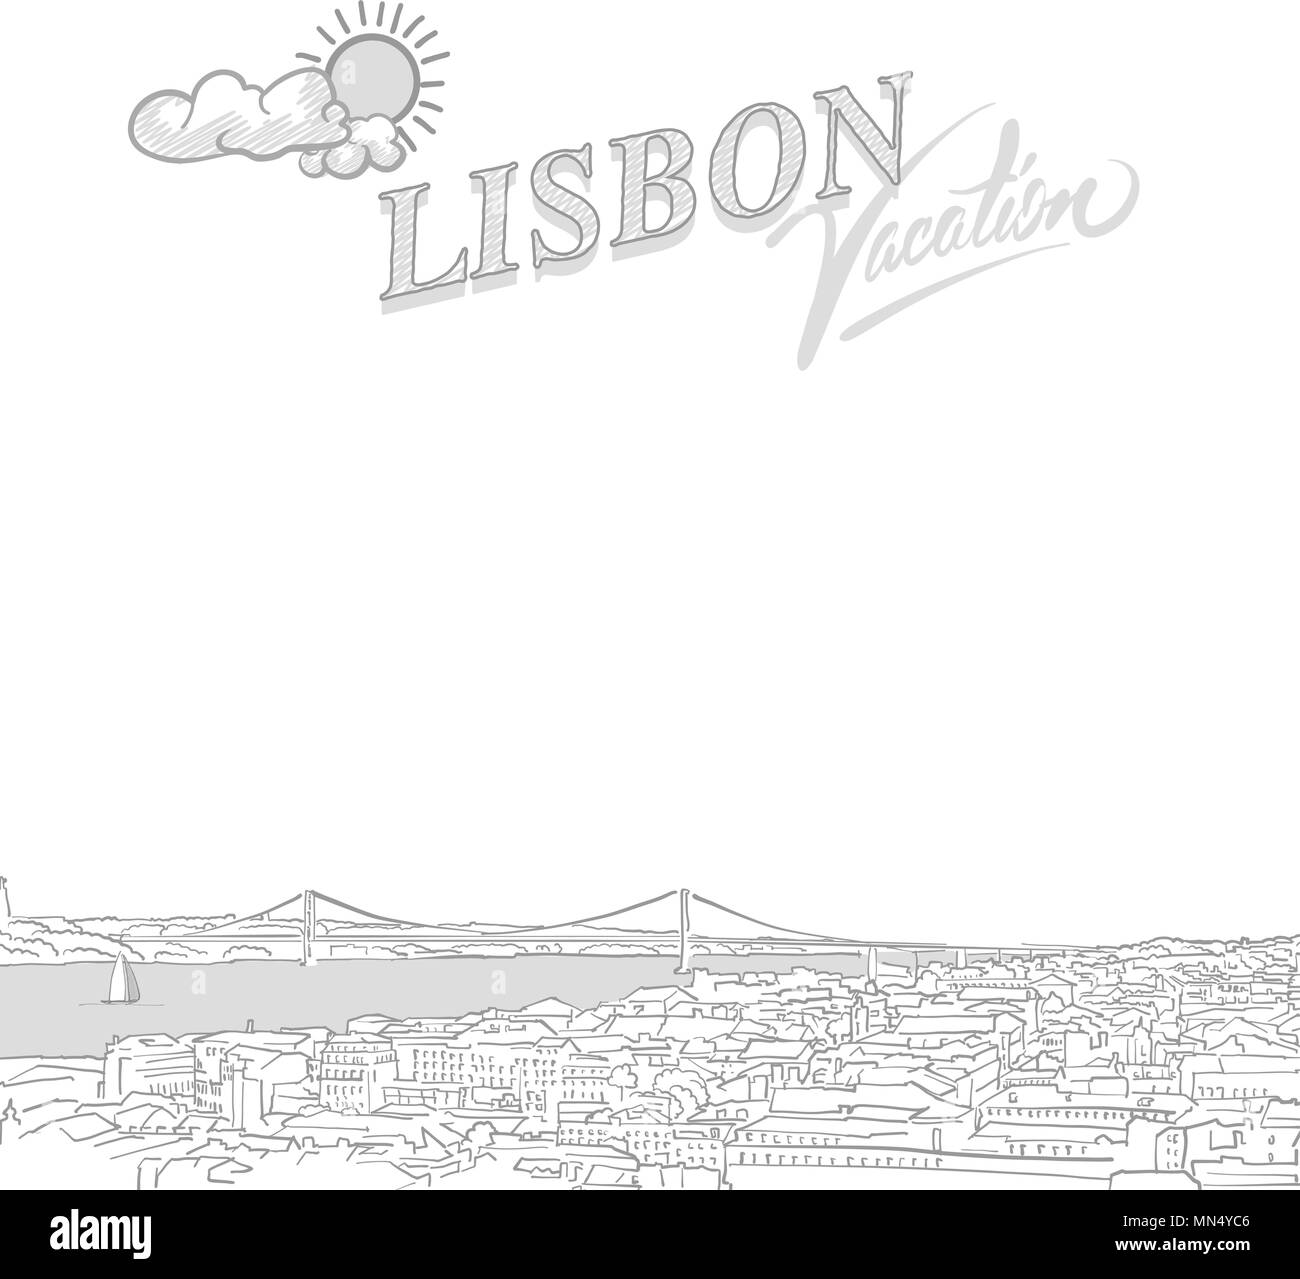 Lisbona travel marketing coperchio, disegnato a mano disegno vettoriale Illustrazione Vettoriale